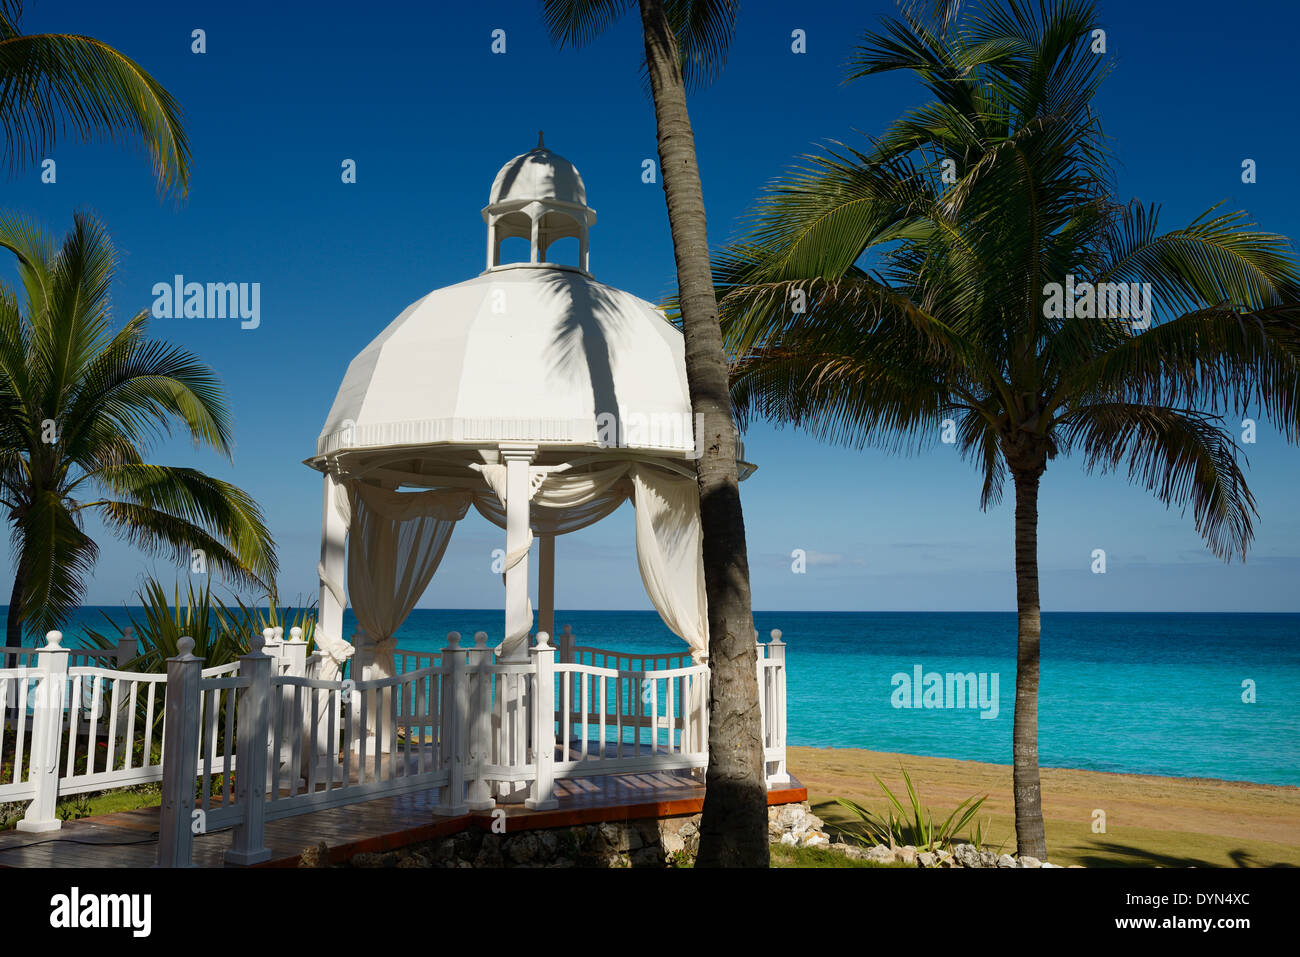 Chapelle de Mariage avec des palmiers à un Varadero Cuba beach resort par la baie de Cardenas océan Atlantique Banque D'Images